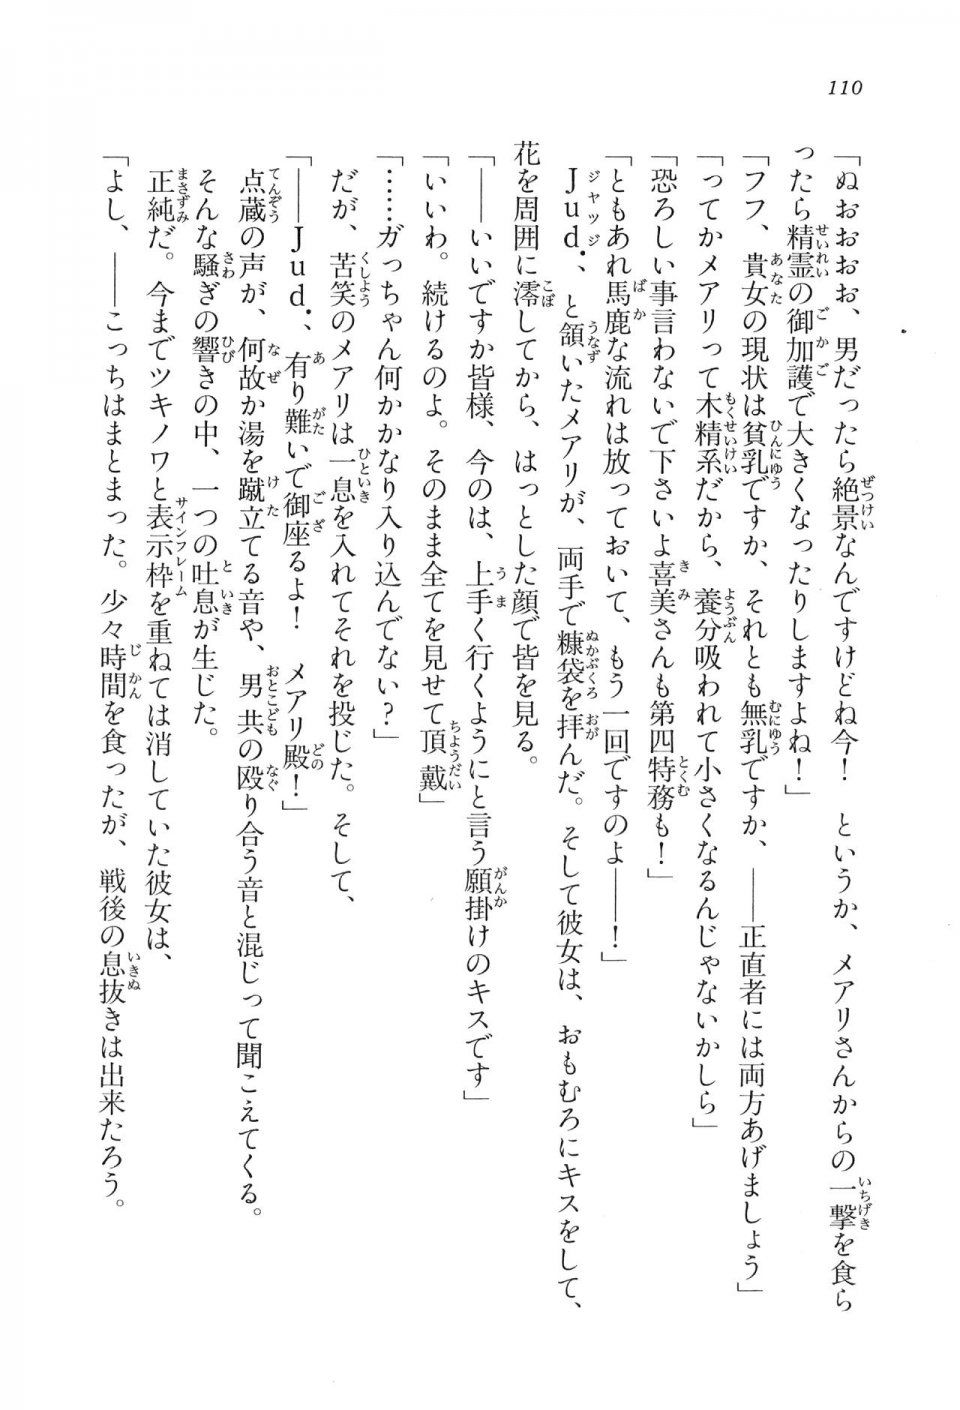 Kyoukai Senjou no Horizon LN Vol 16(7A) - Photo #110